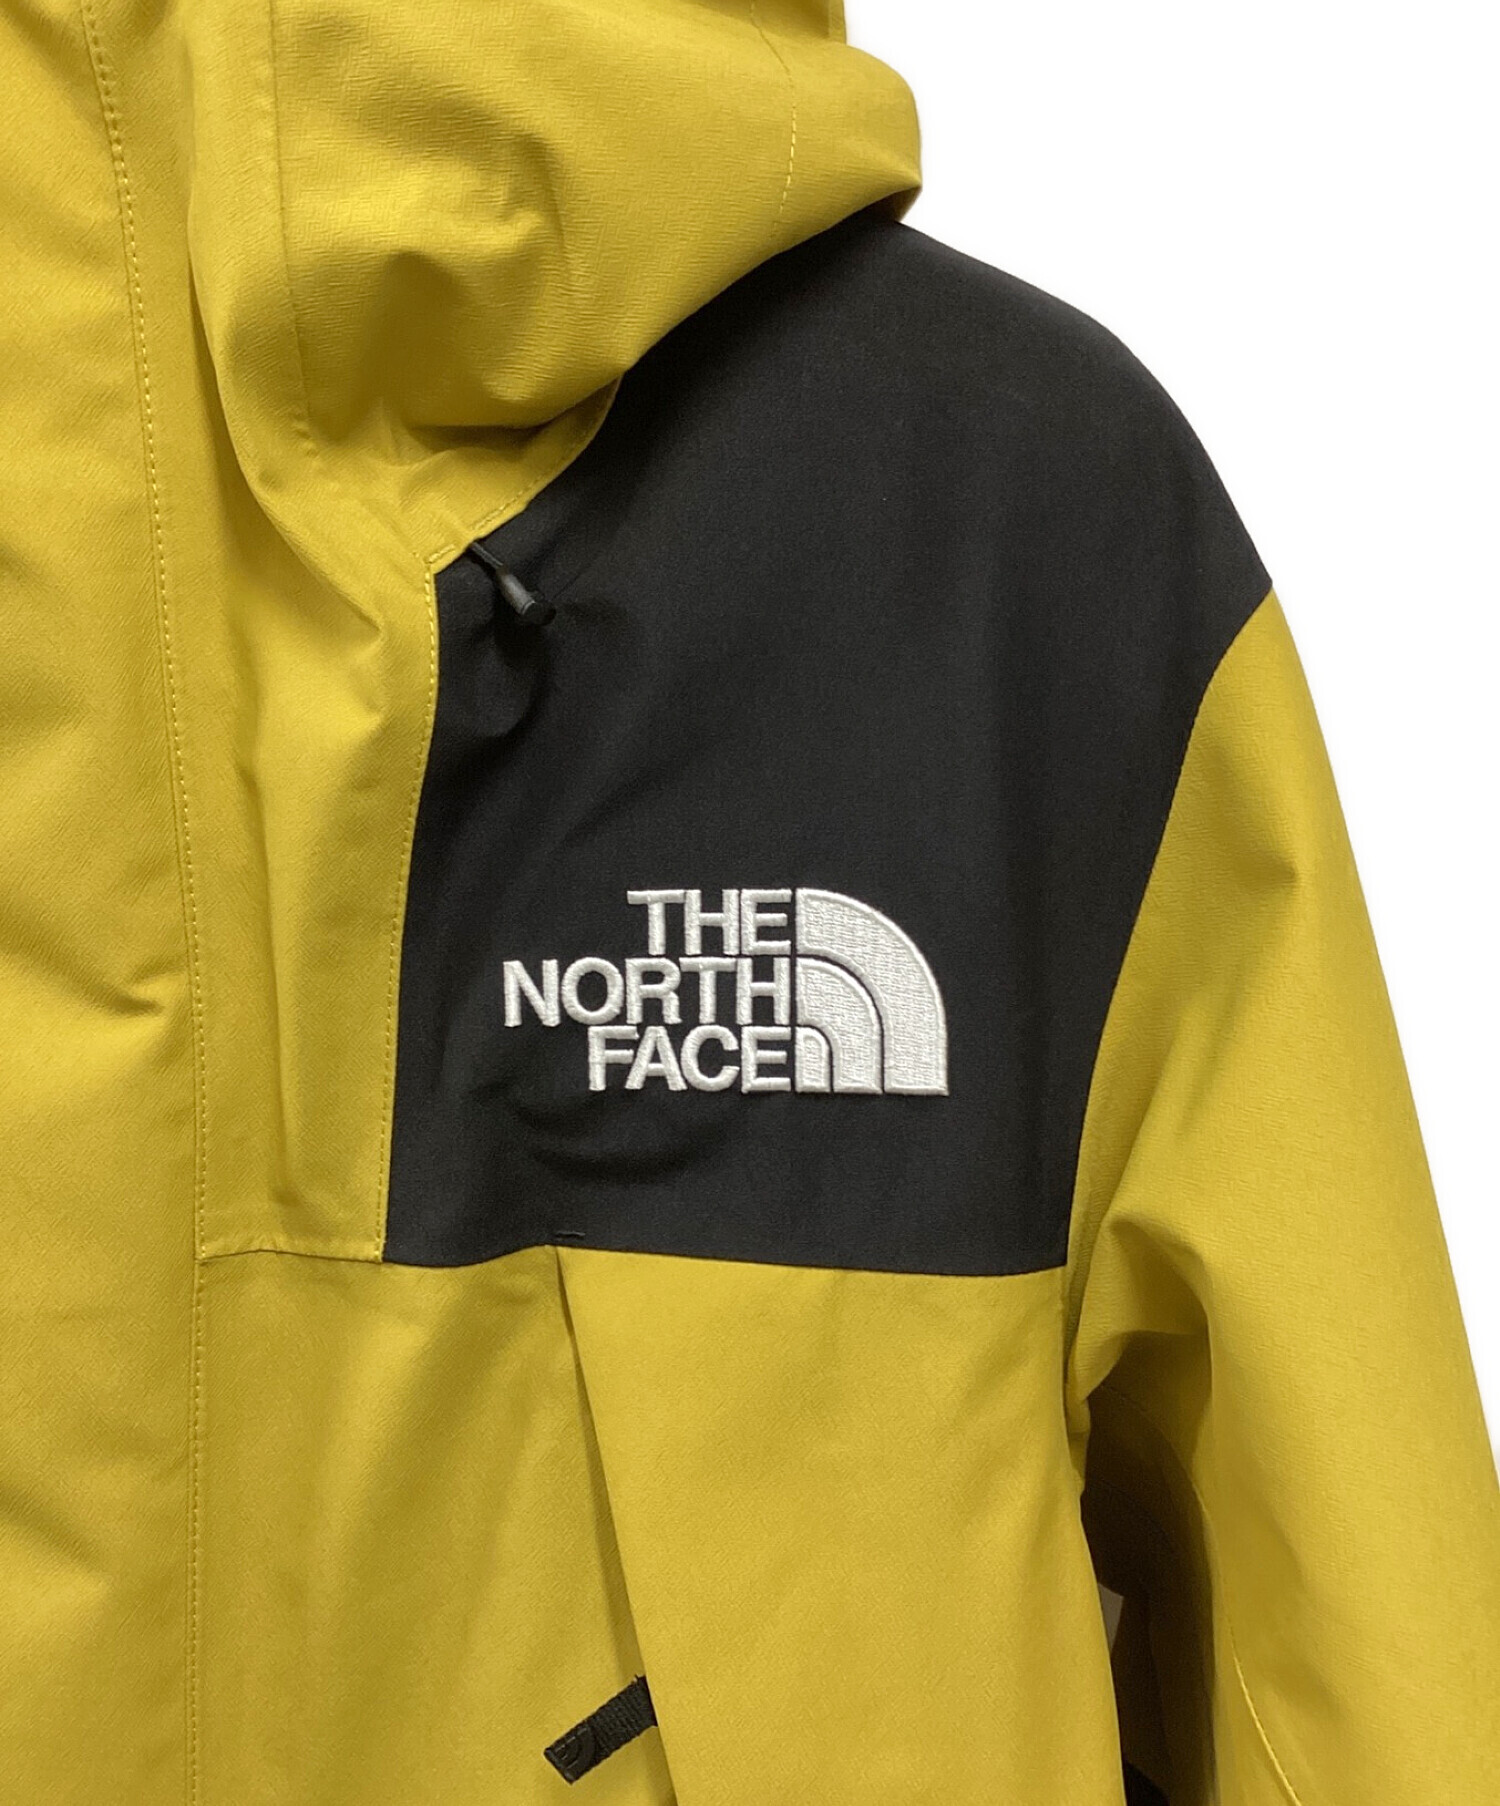 THE NORTH FACE (ザ ノース フェイス) MOUNTAIN JACKET ミネラルゴールド サイズ:M 未使用品